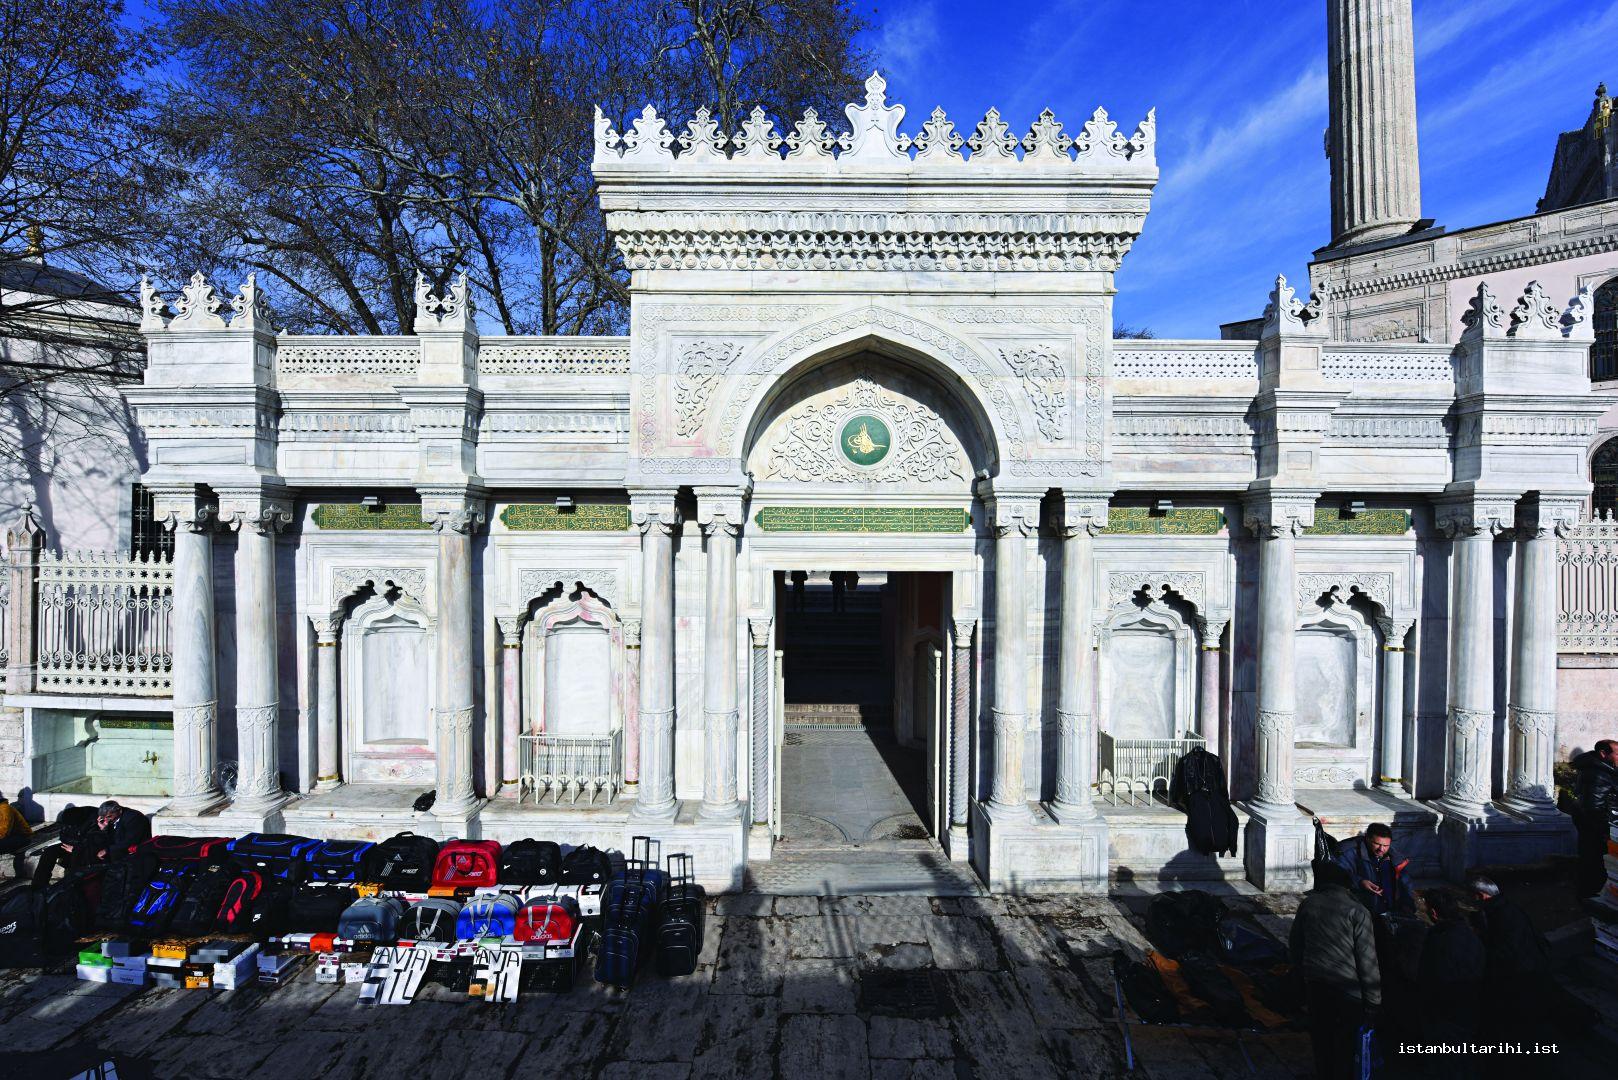 17- The entrance of Pertevniyal Valide Sultan Mosque